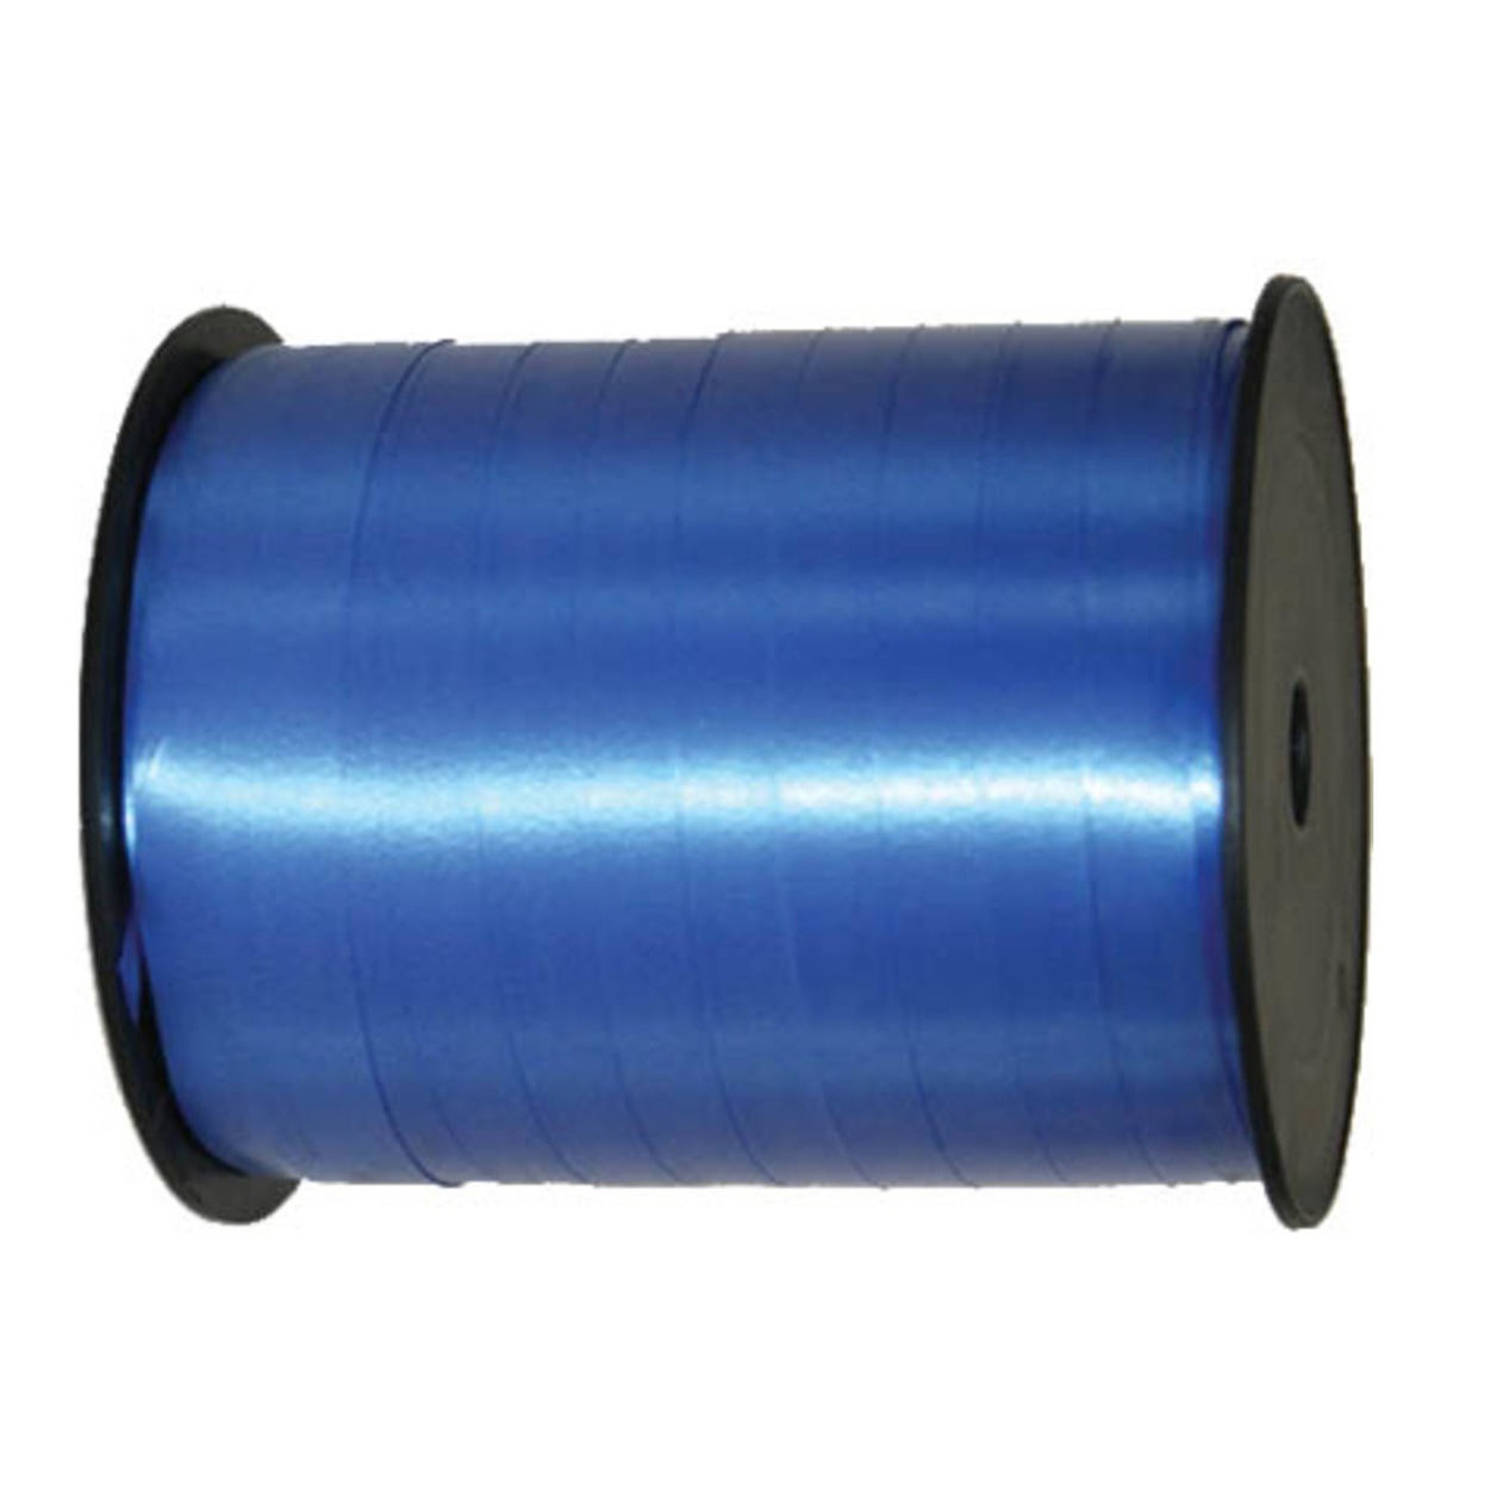 500 mtr - Sierlint - Donkerblauw - 5mm - Verpakken